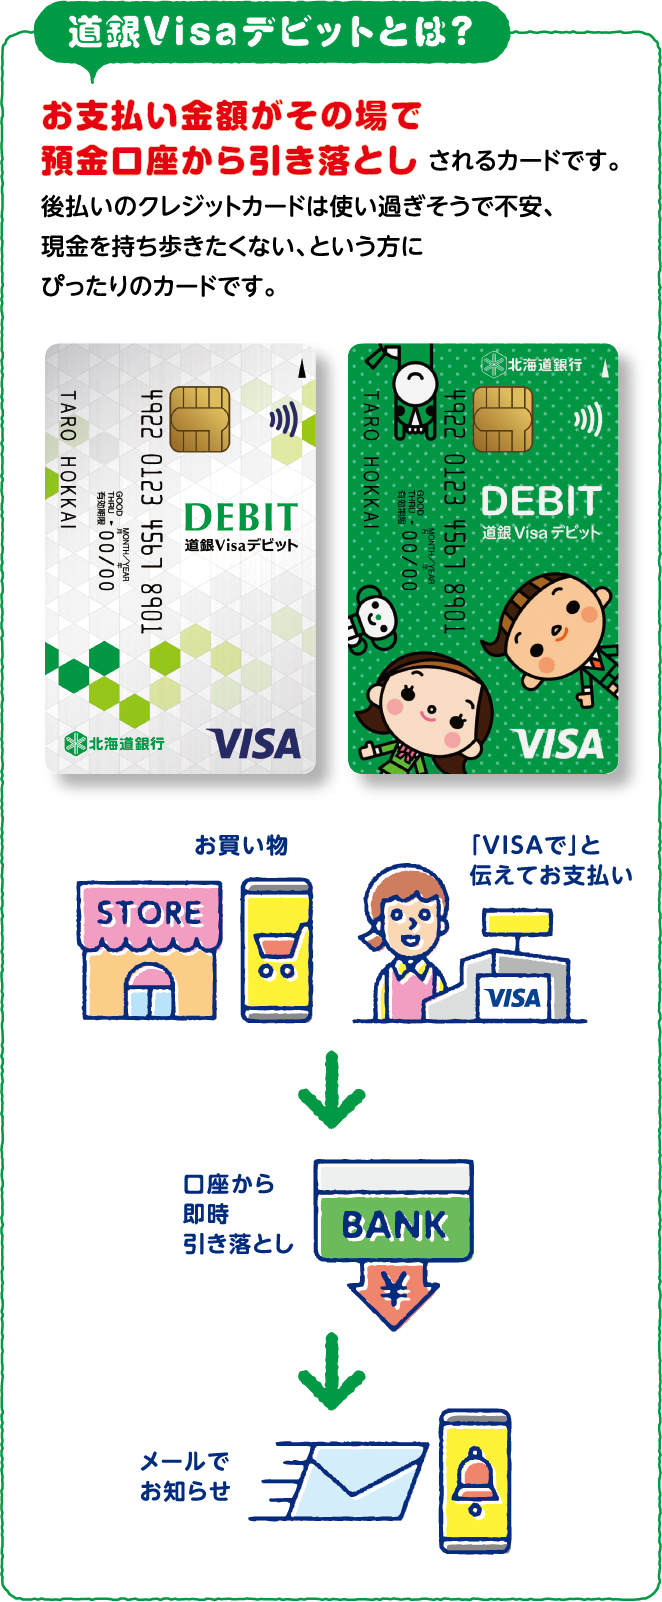 道銀Visaデビットとは？ お支払い金額がその場で預金口座から引き落としされるカードです。後払いのクレジットカードは使い過ぎそうで不安、現金を持ち歩きたくない、という方にぴったりのカードです。